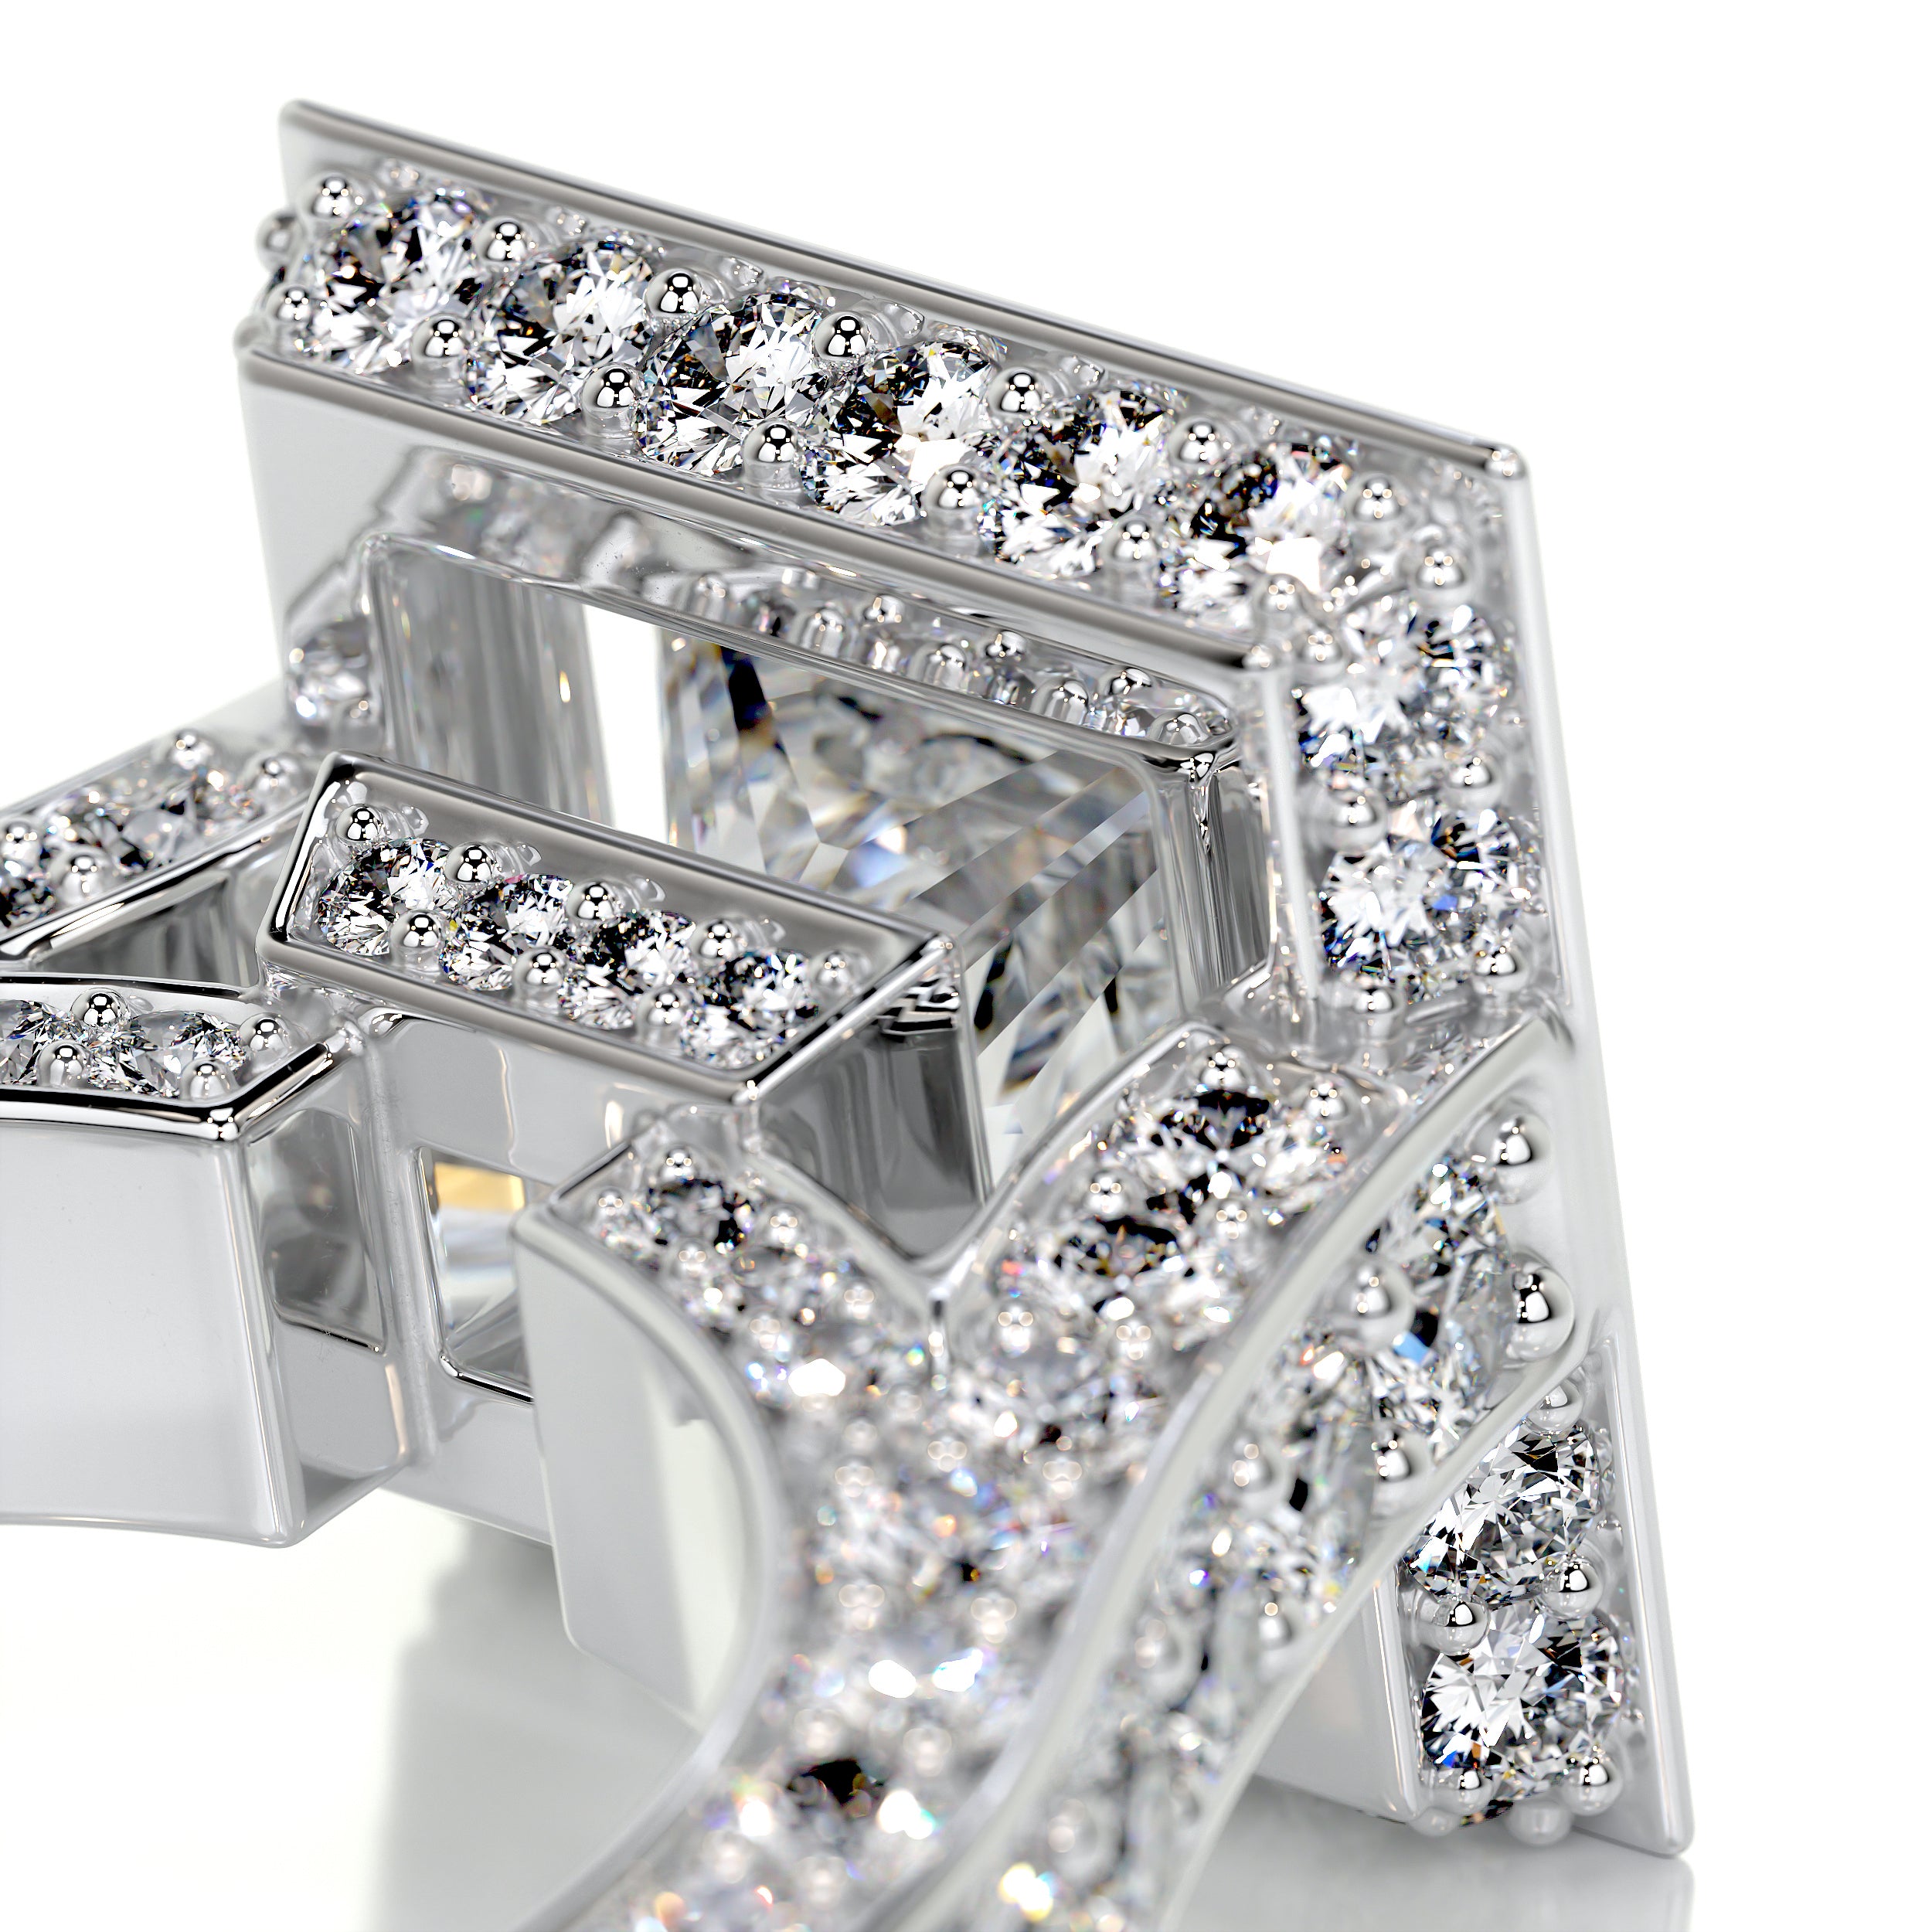 Freya Diamond Engagement Ring   (5 Carat) -Platinum